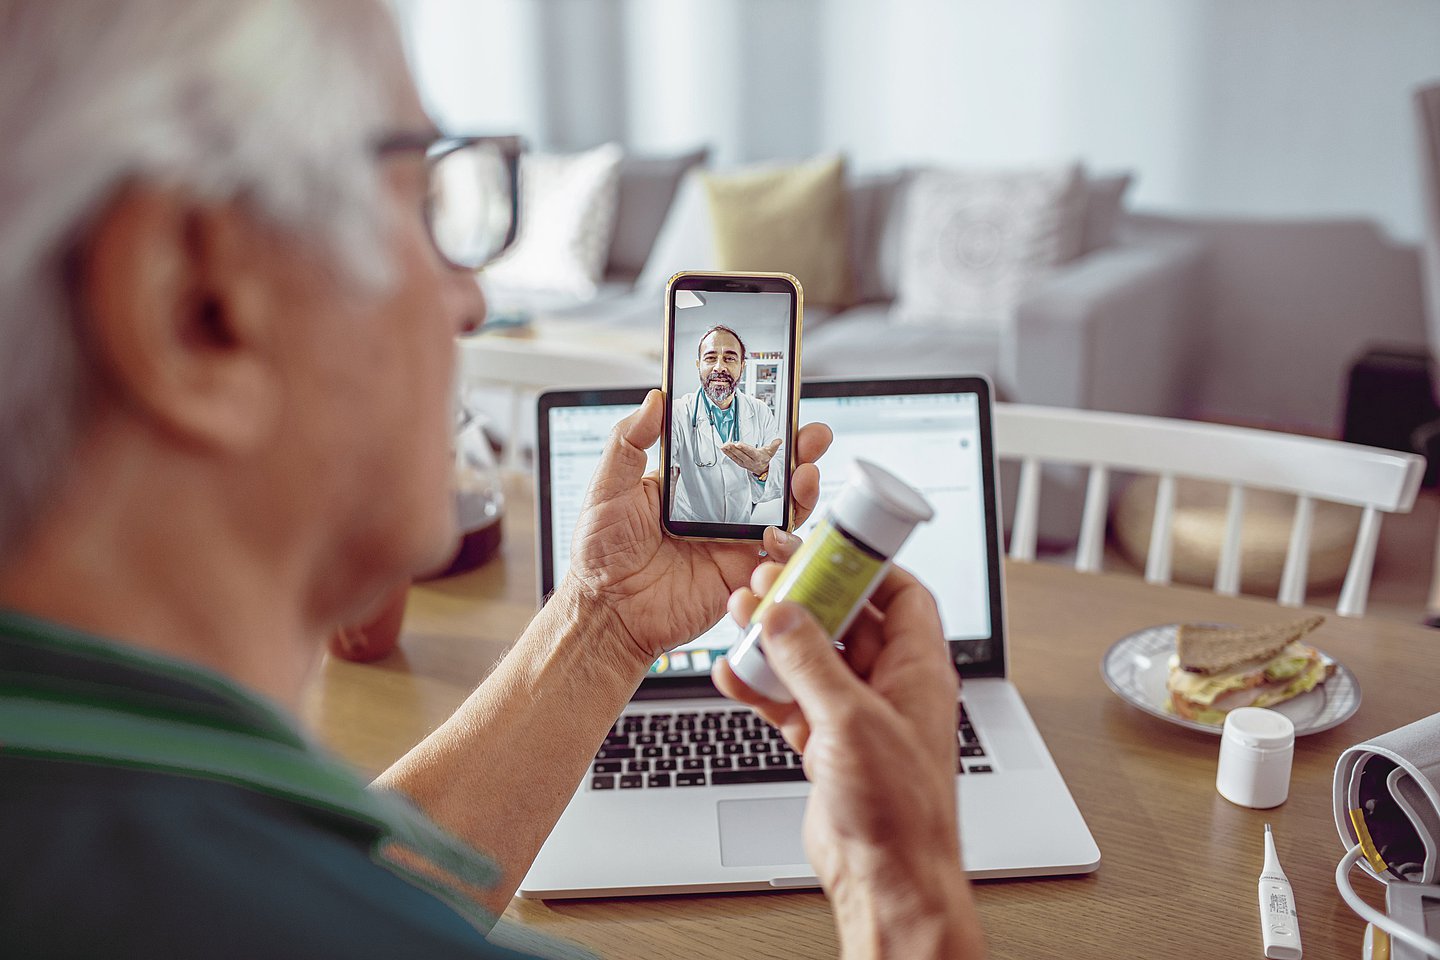 Foto: Ein Senior im Video-Chat mit einem Arzt: In der linken Hand hält er ein Smartphone, in der rechten Hand ein Medikament. 